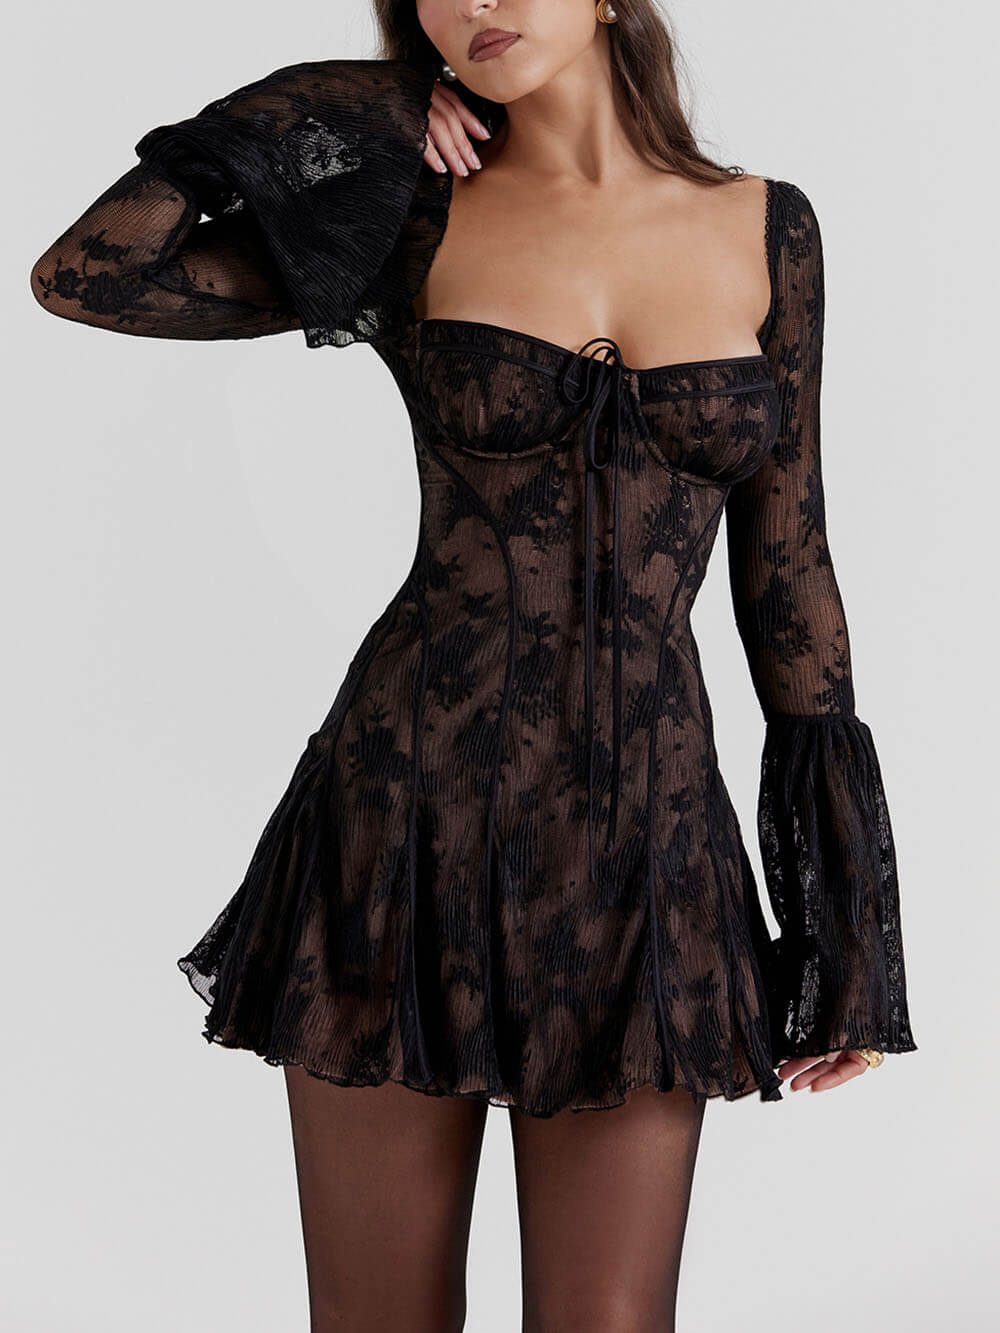 Black Lace Corset Dress